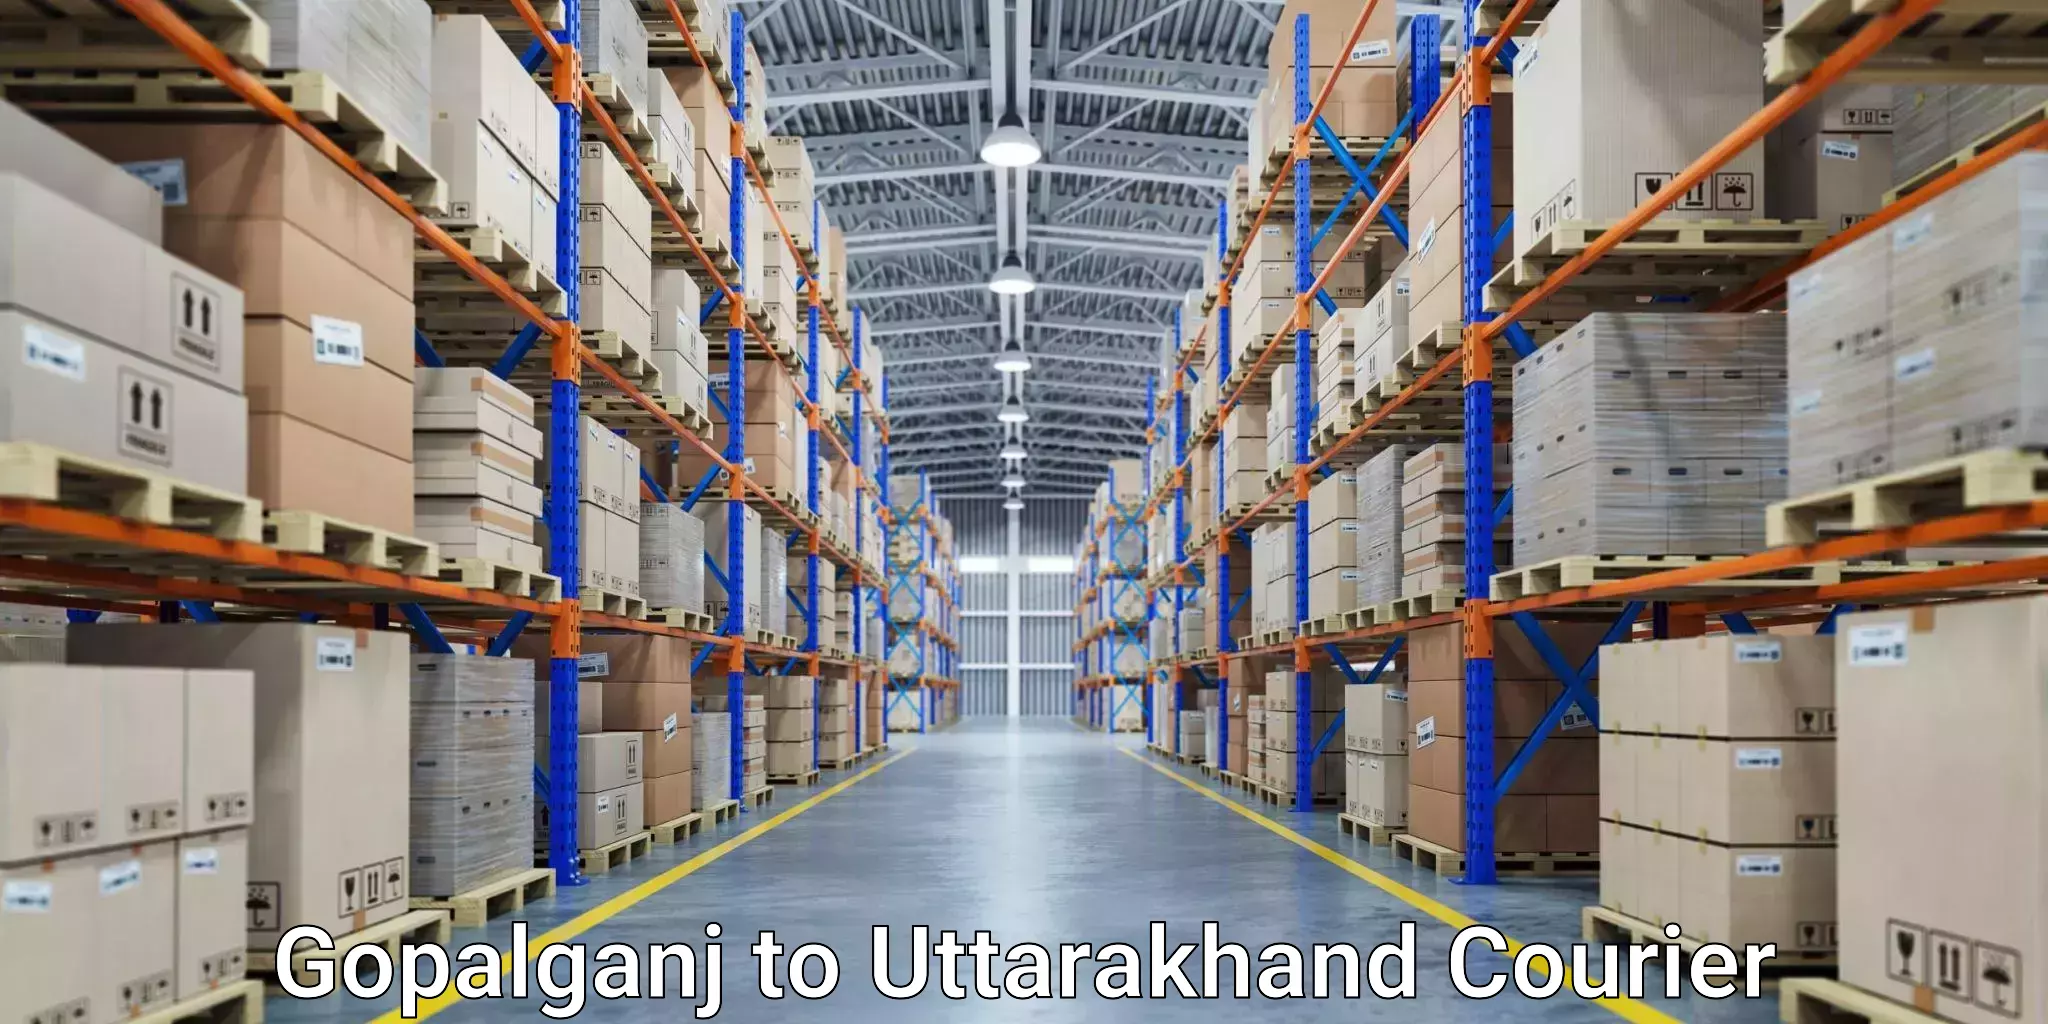 Reliable freight solutions Gopalganj to Kotdwara